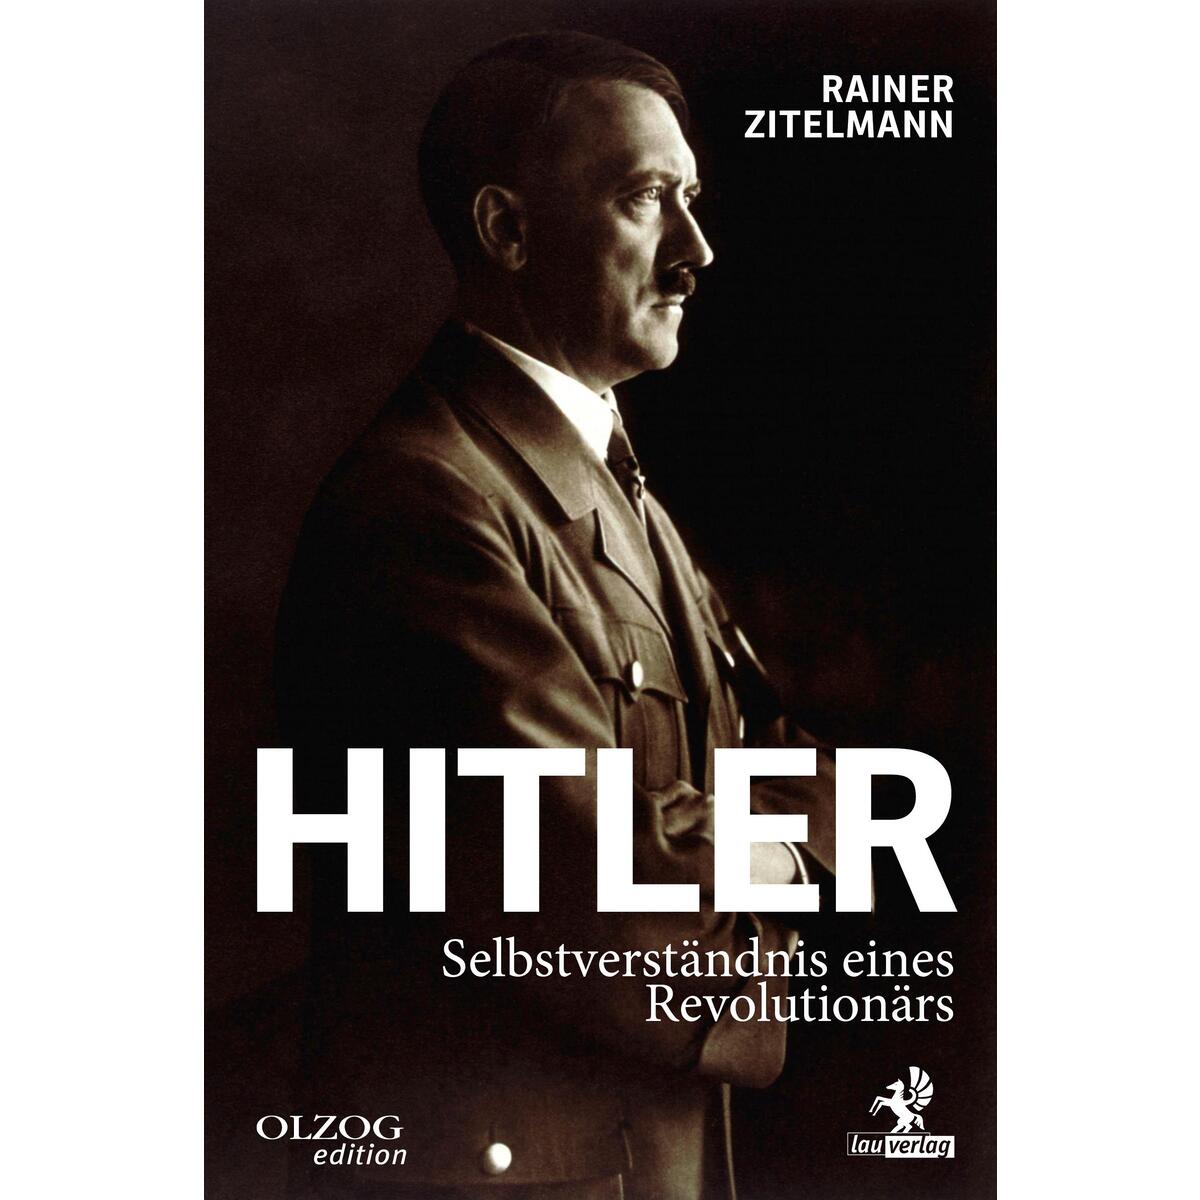 Hitler von Olzog